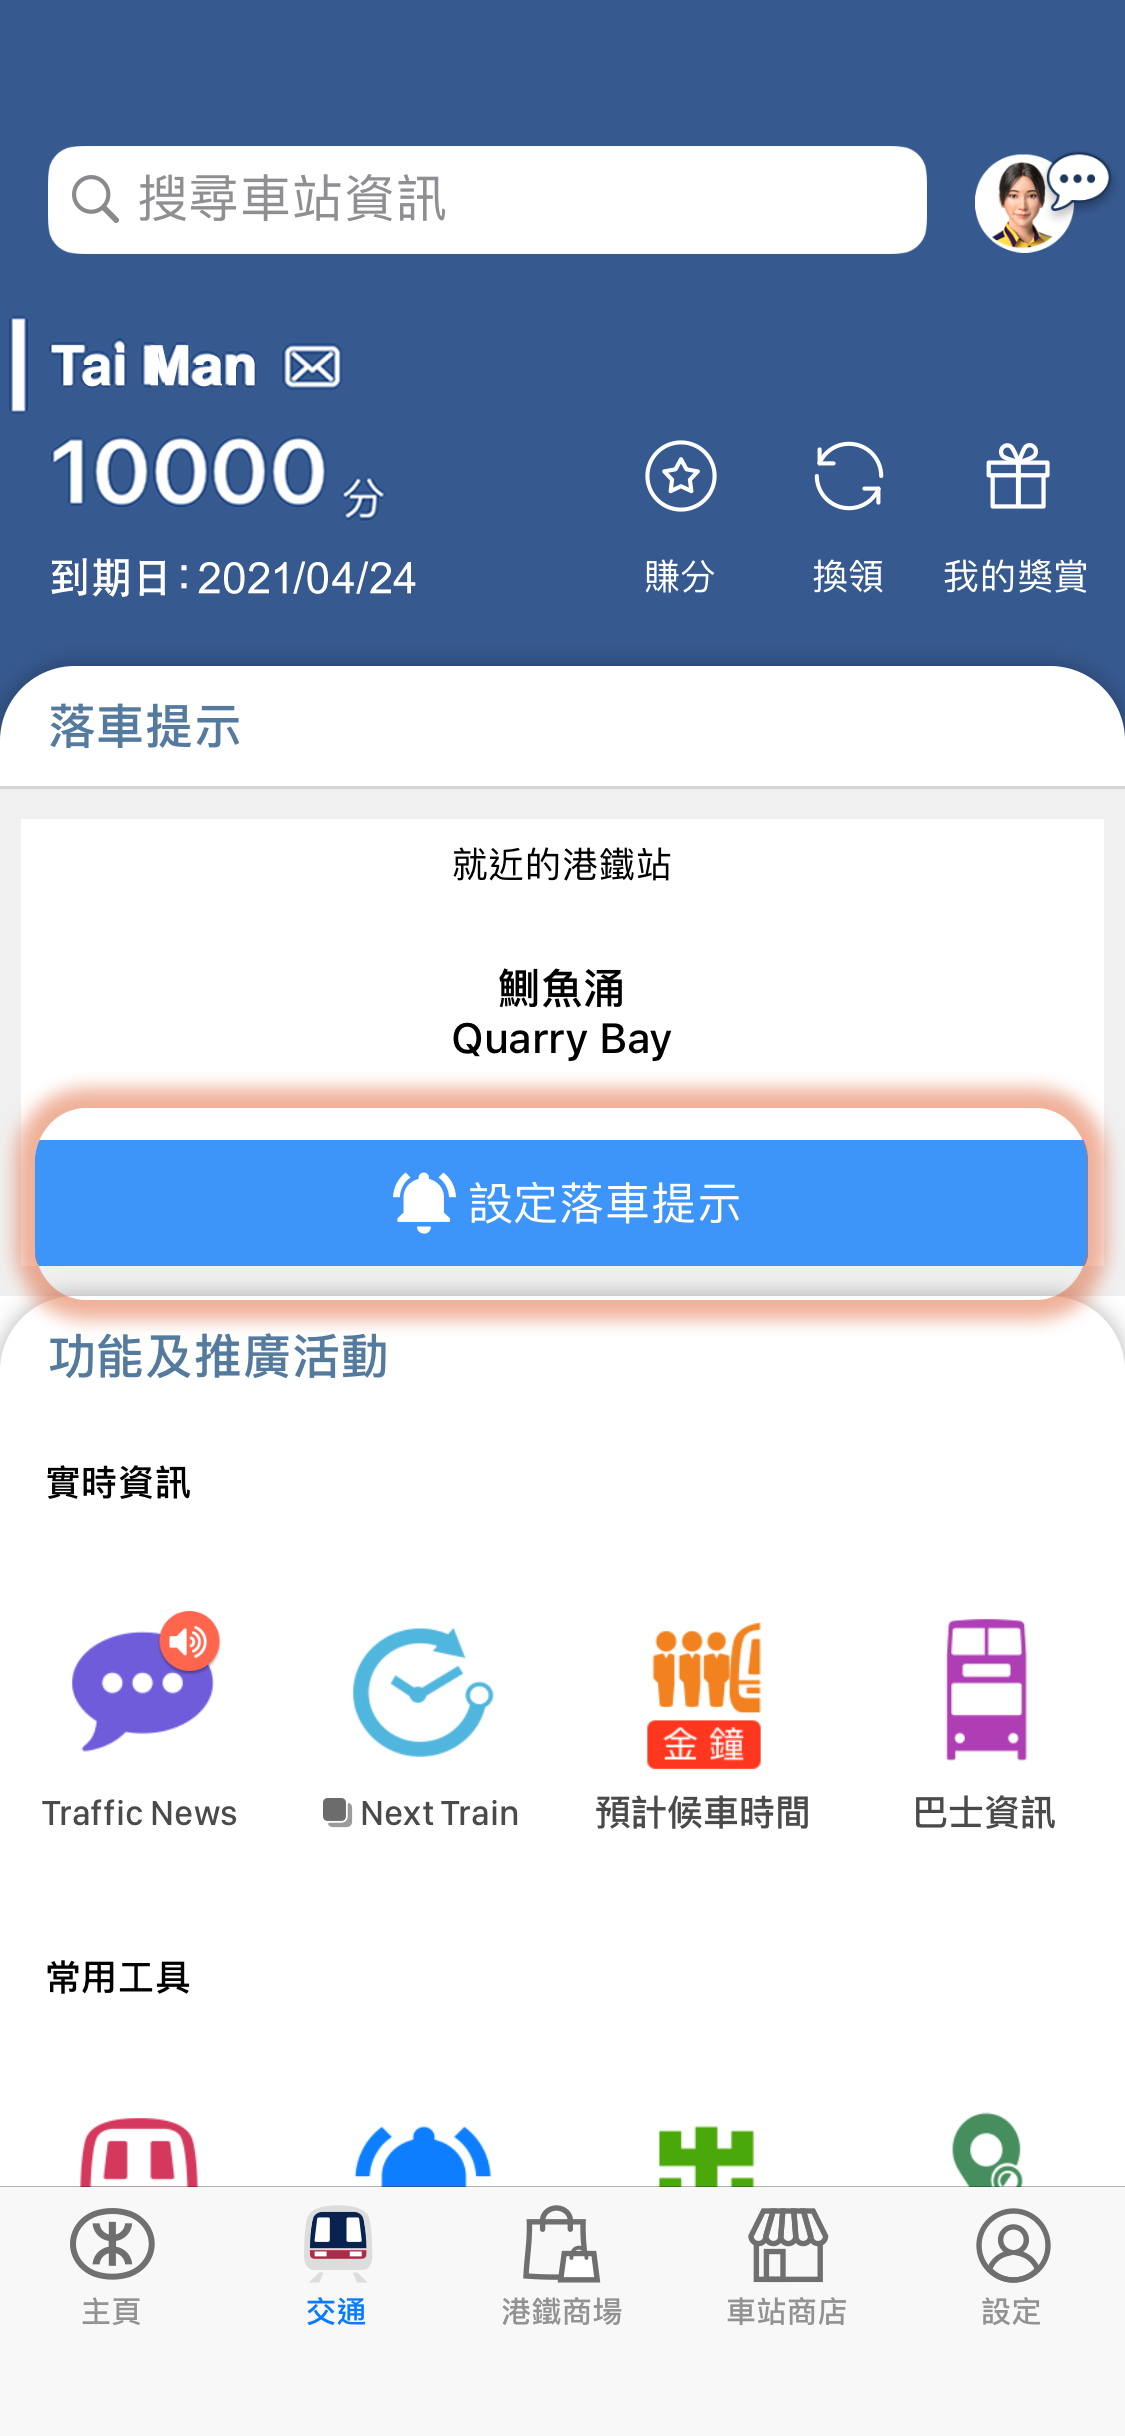 於MTR Mobile「交通」頁面按下「設定落車提示」